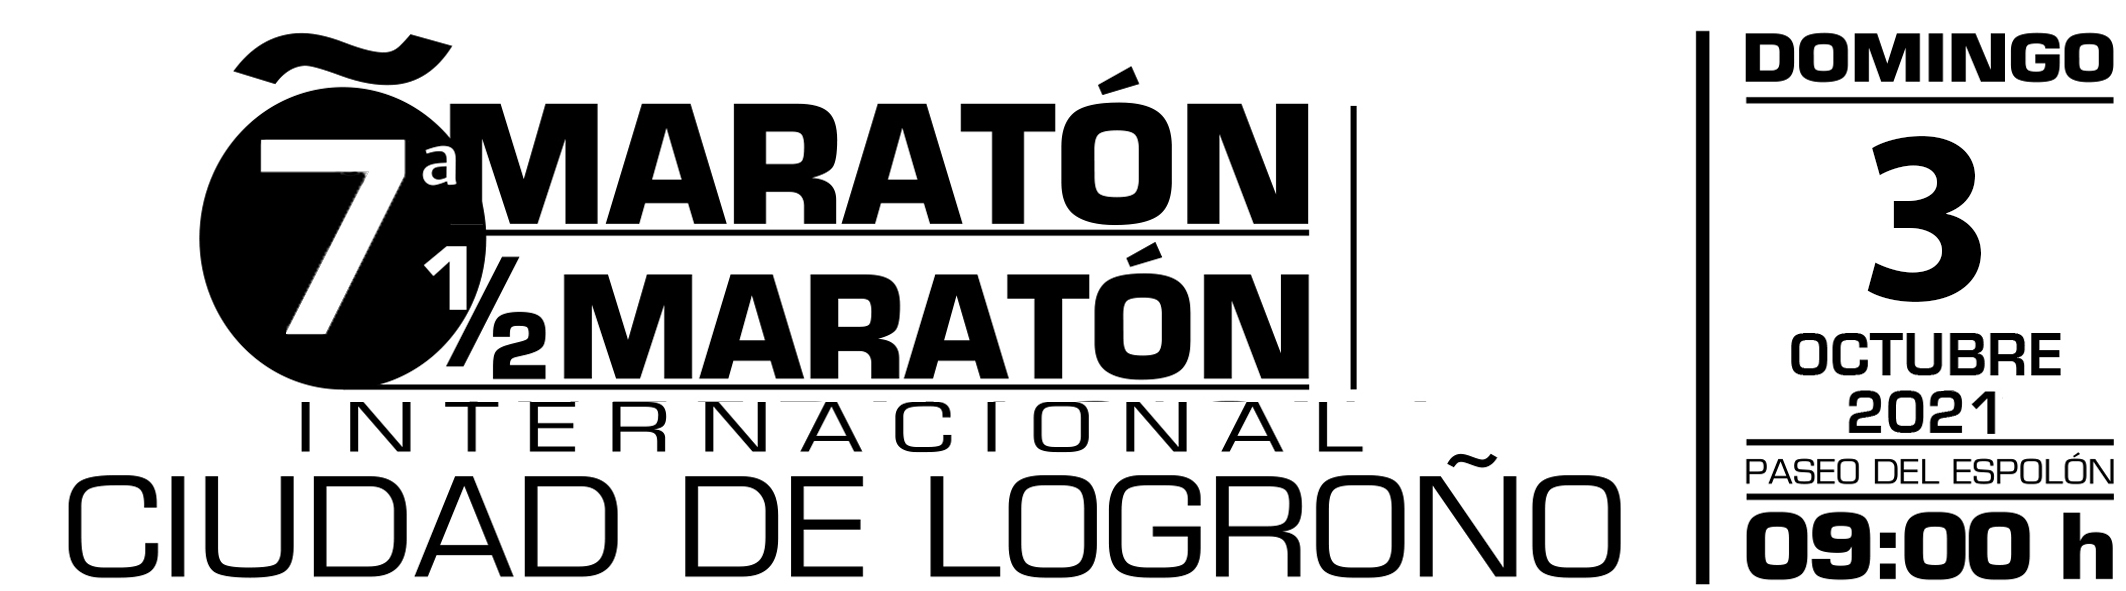 Anexo 3 - Maratón Ciudad de Logroño 2022